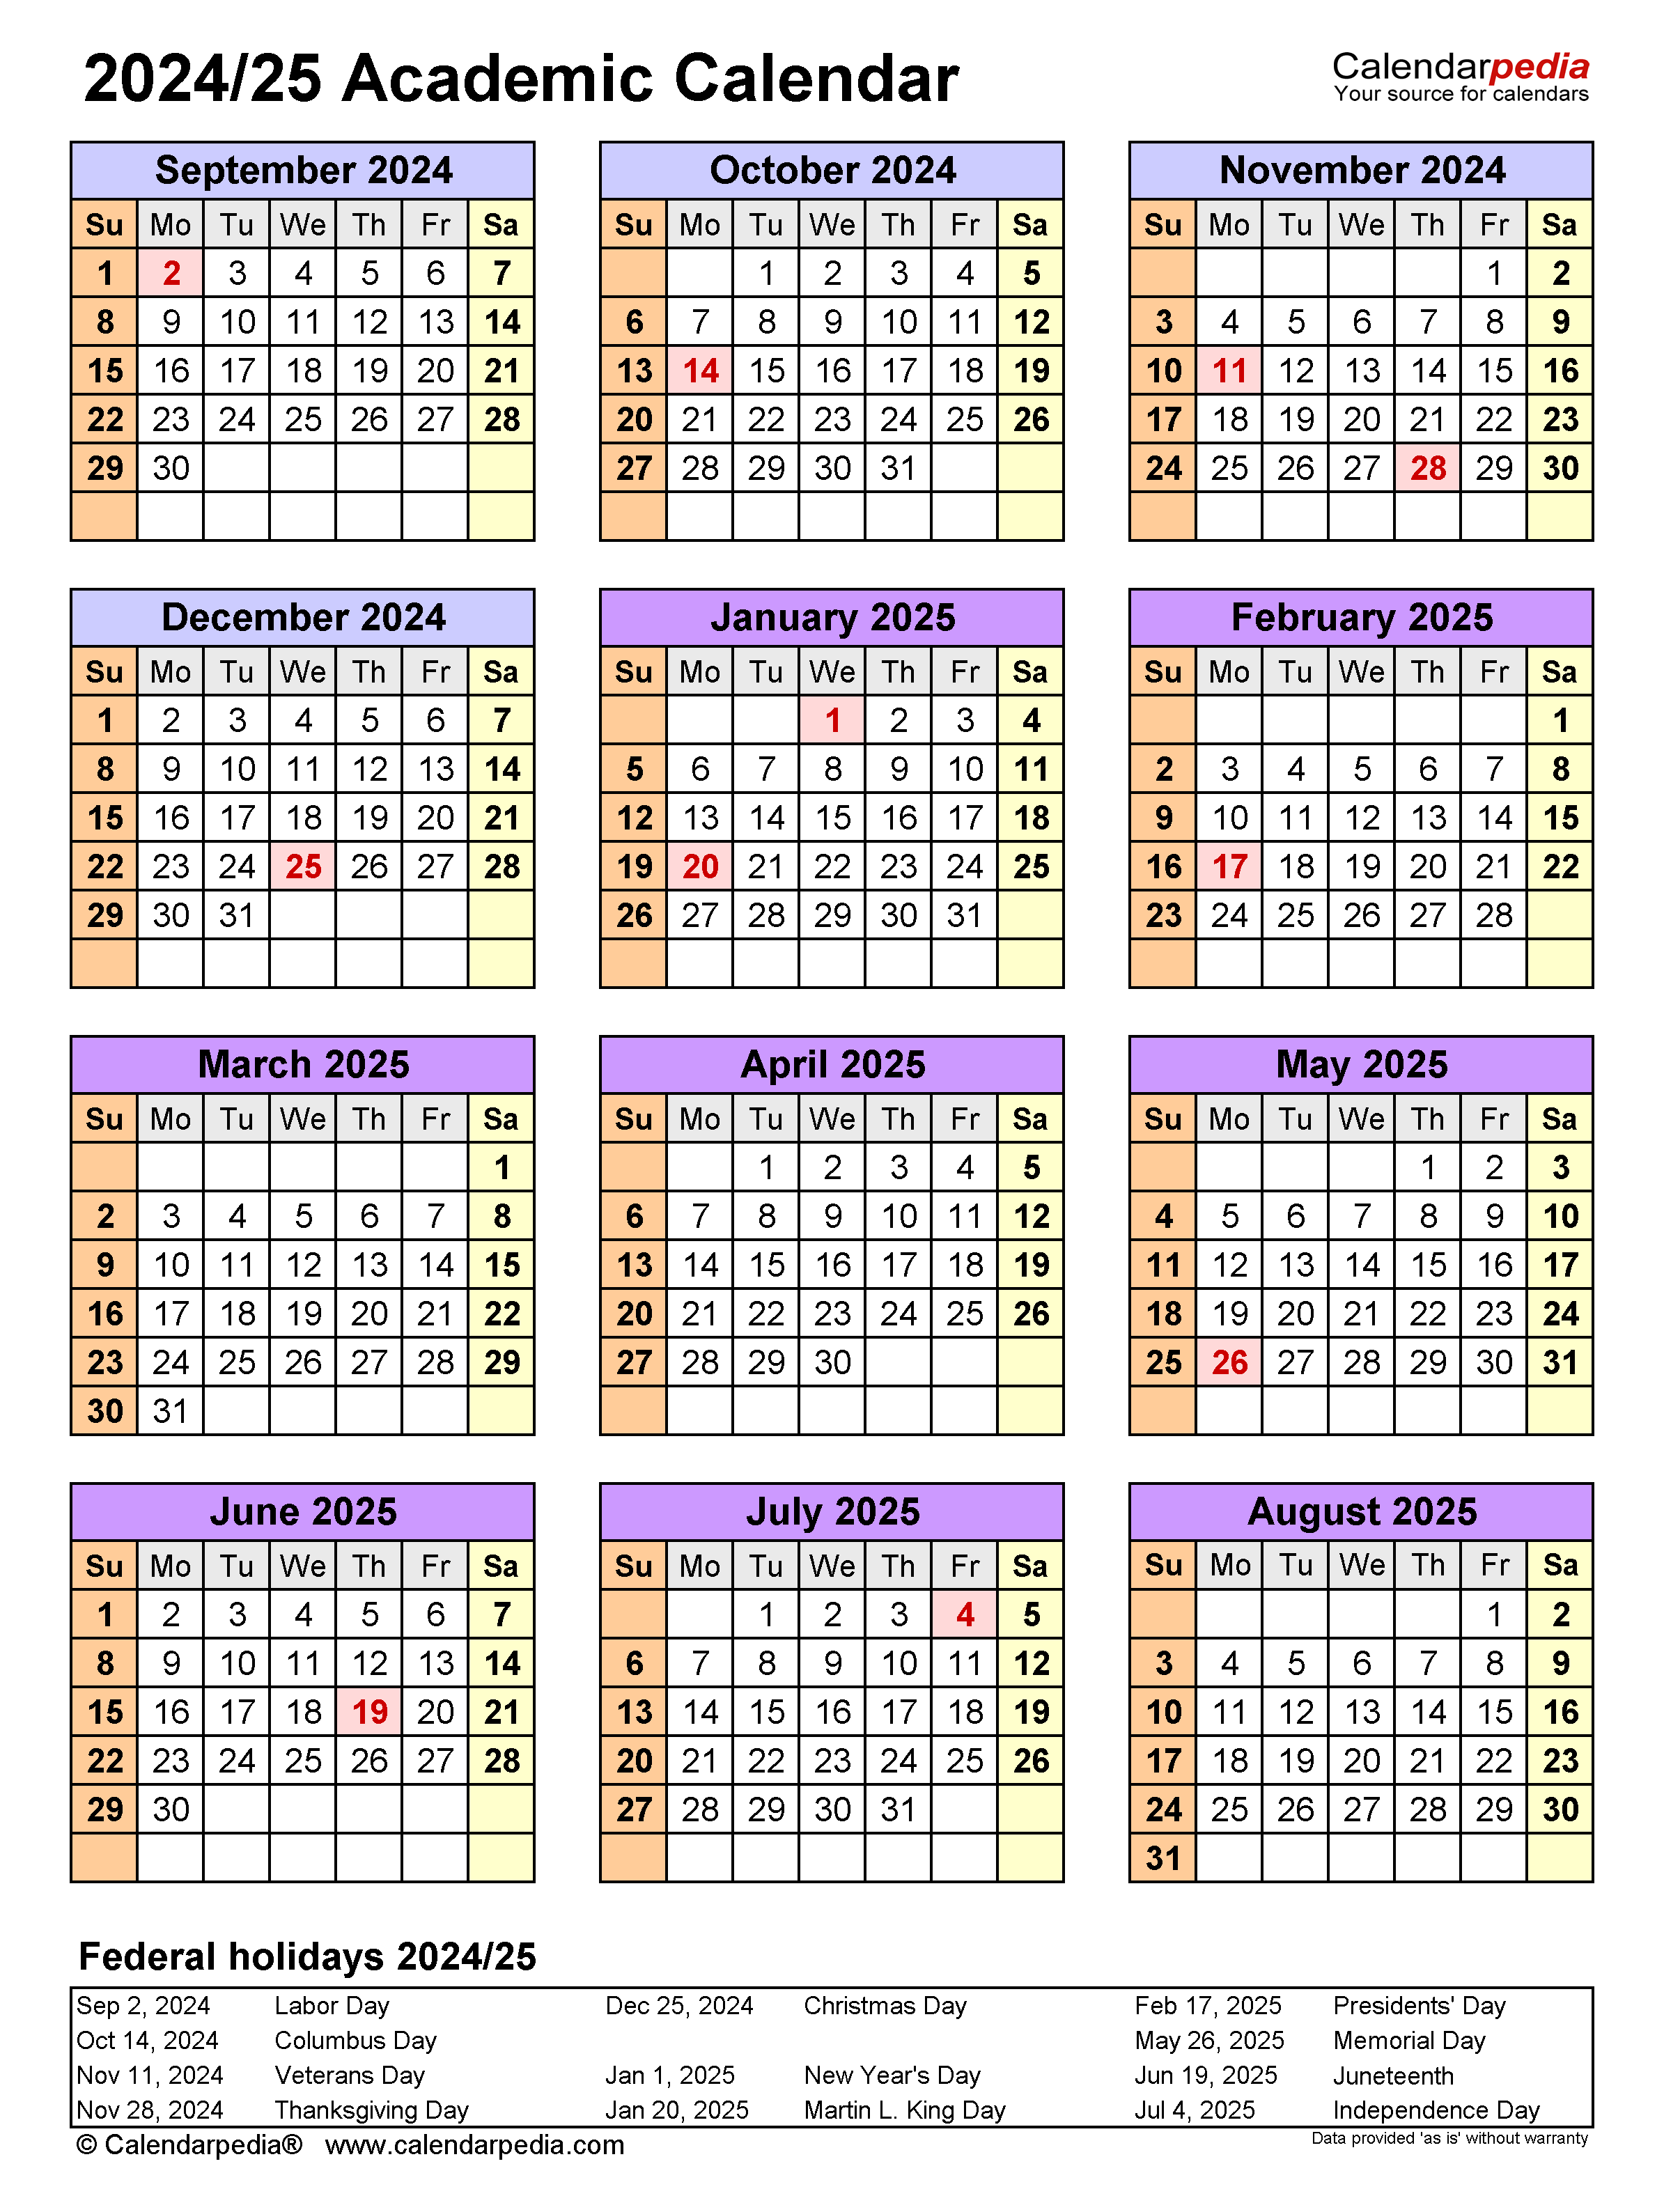 Ewu Academic Calendar 2024 2025 February 2024 Calendar - Free Printable 2024-2025 Religious Calendar